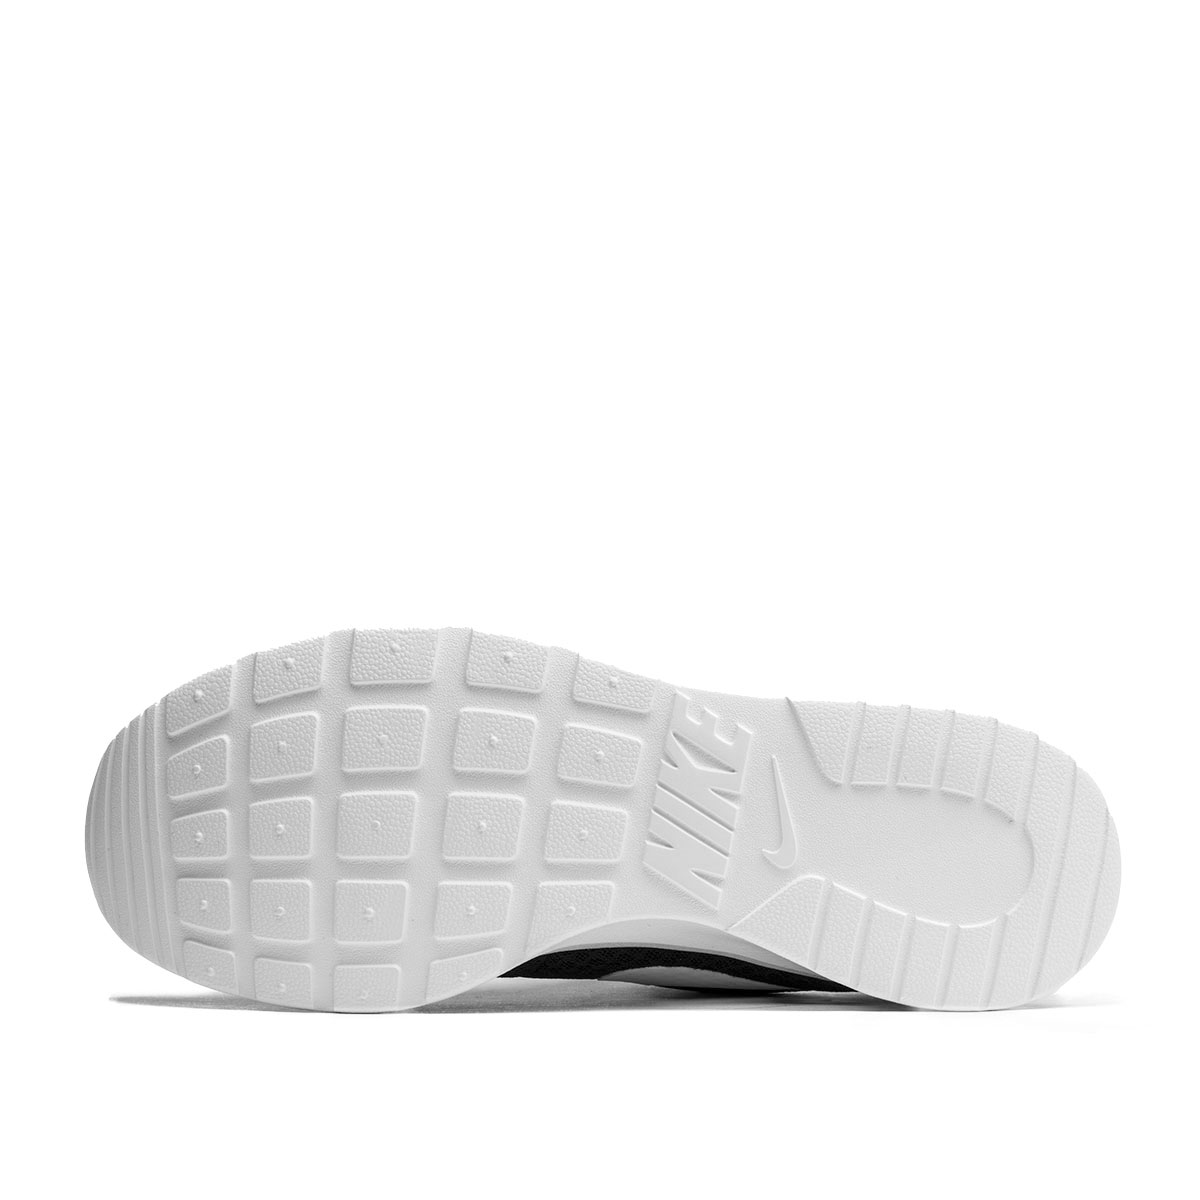 Nike Tanjun  812654-011